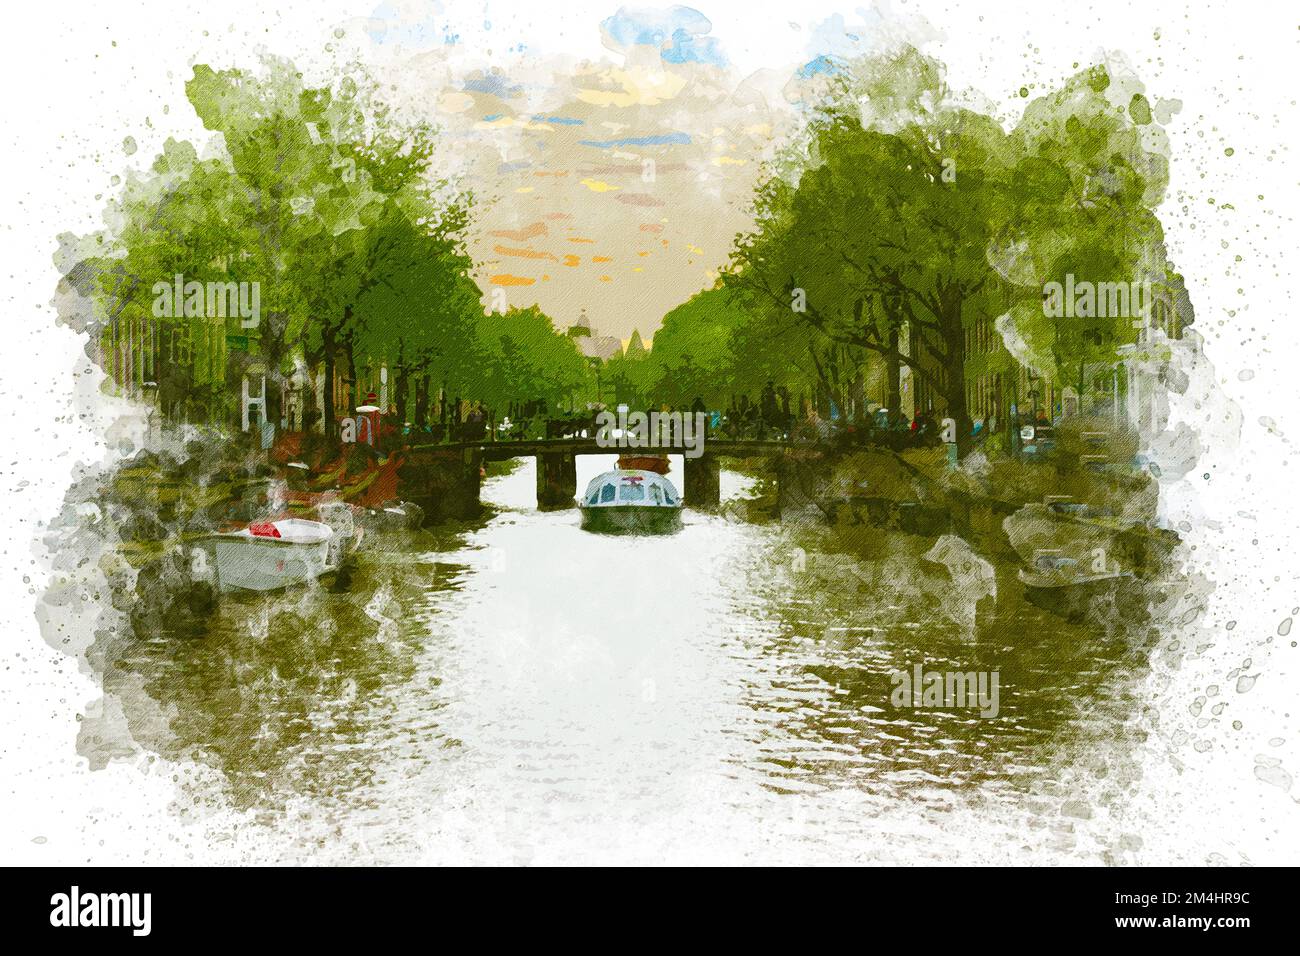 Aquarellgemälde der Amsterdamer Stadtlandschaft. Wunderschöner Blick auf den Amsterdamer Kanal mit Aquarell-Illustrationen Stockfoto